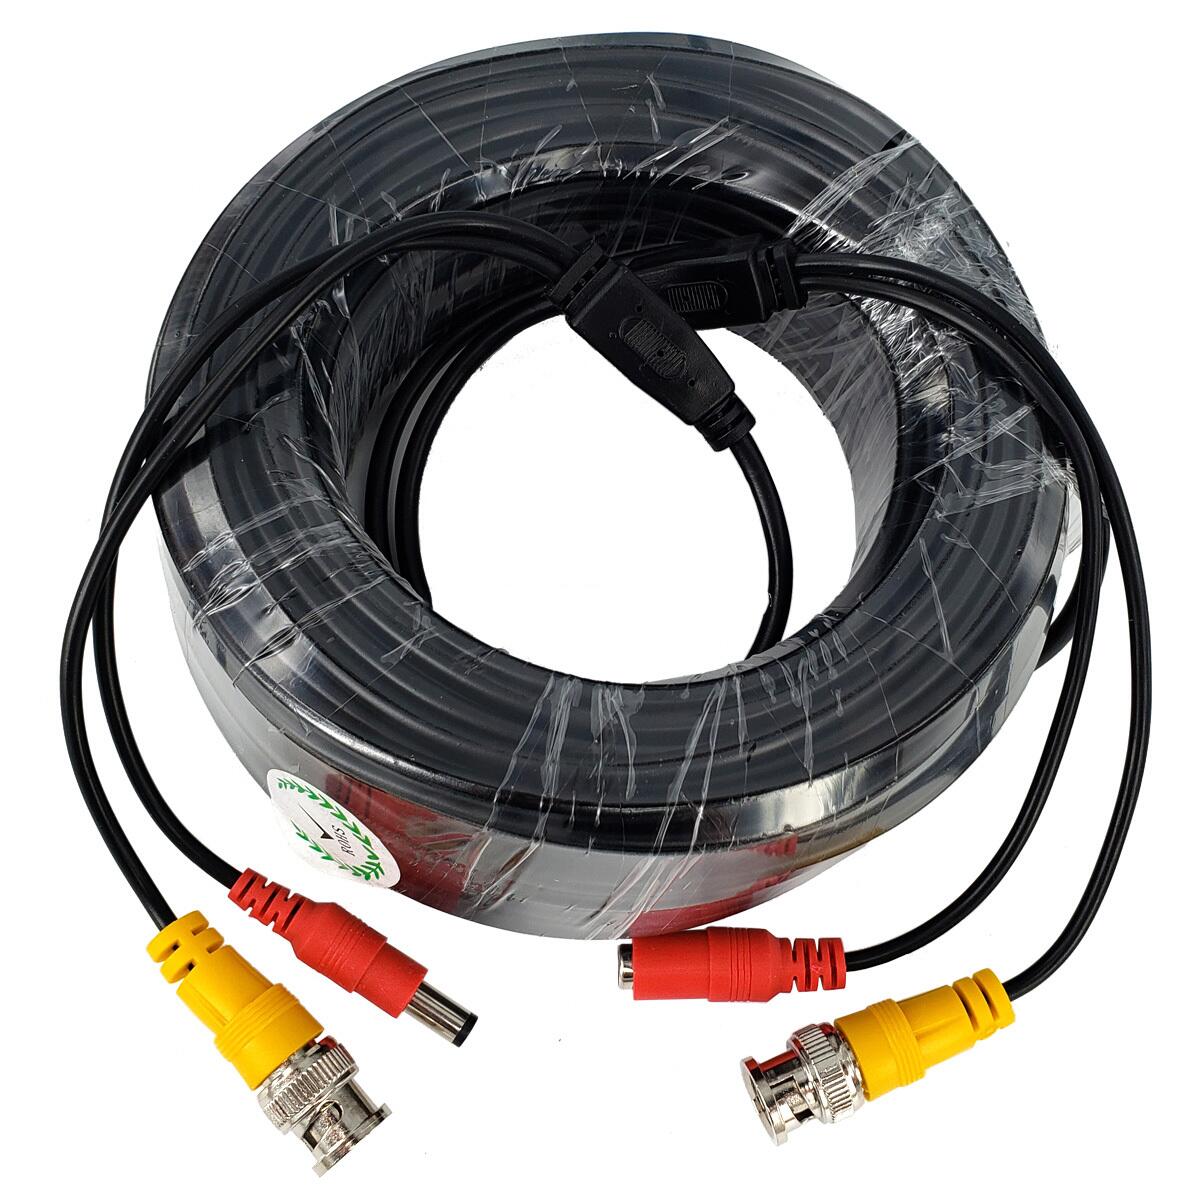 Analog camera DVR cable (1)